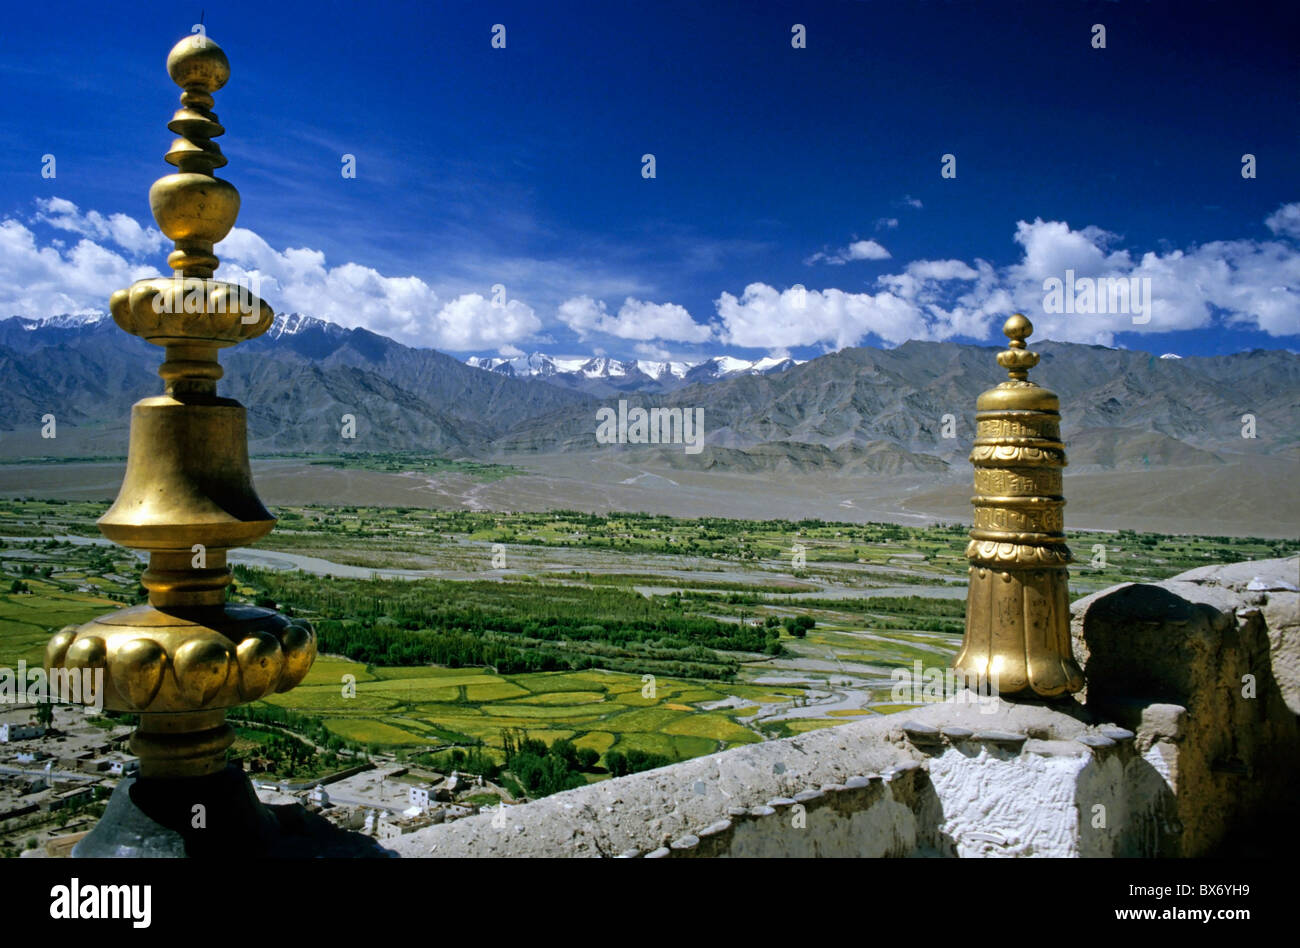 Esculturas de oro en las paredes de la Tikse Gompa monasterio tibetano con vistas panorámicas de las montañas en el fondo, Ladakh, India. Foto de stock